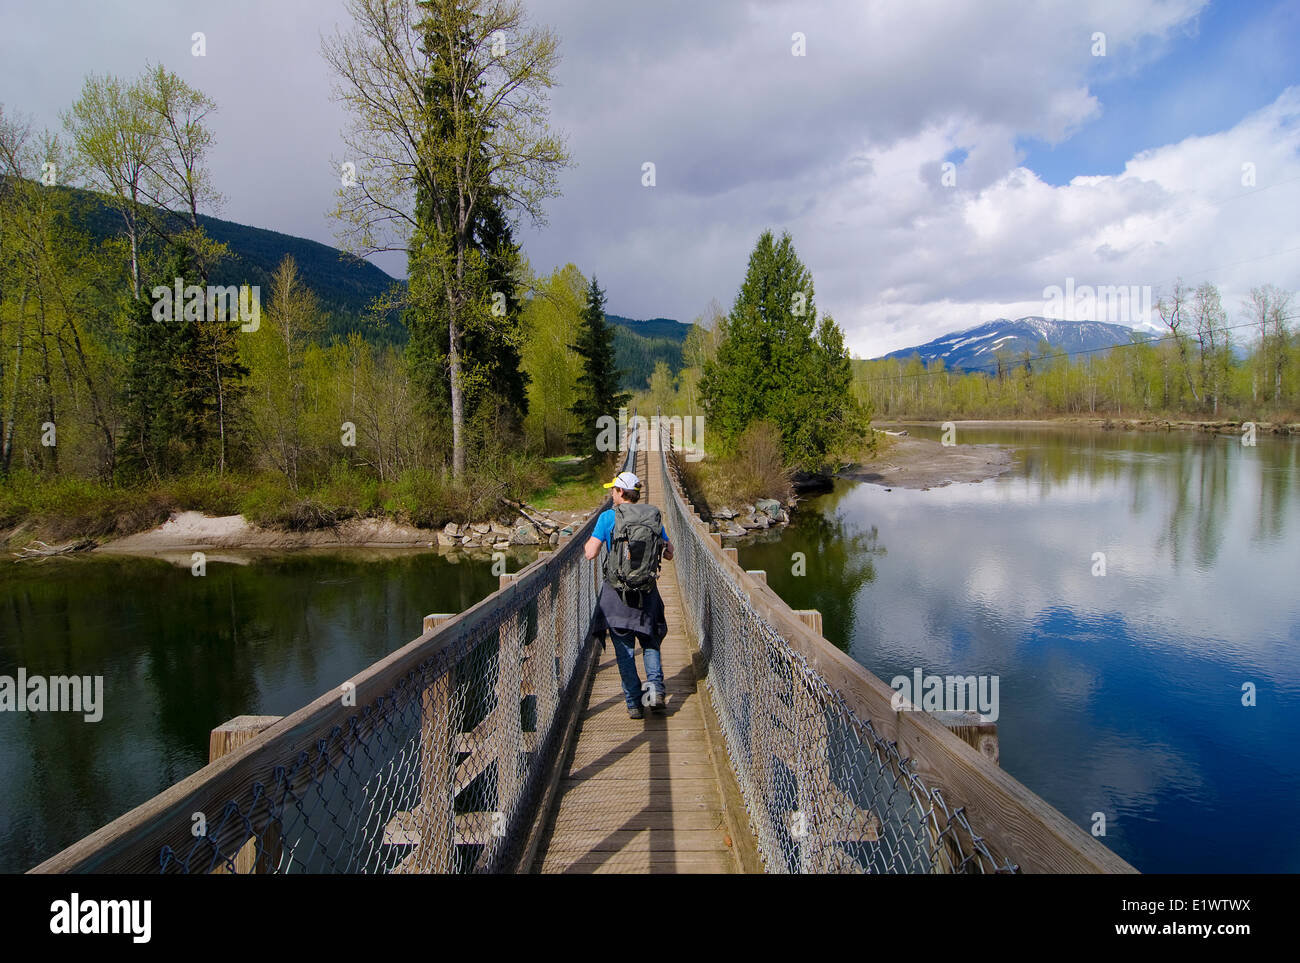 Malakwa ponte di sospensione, Eagle River, Malakwa, British Columbia, Canada, signor 001 Foto Stock